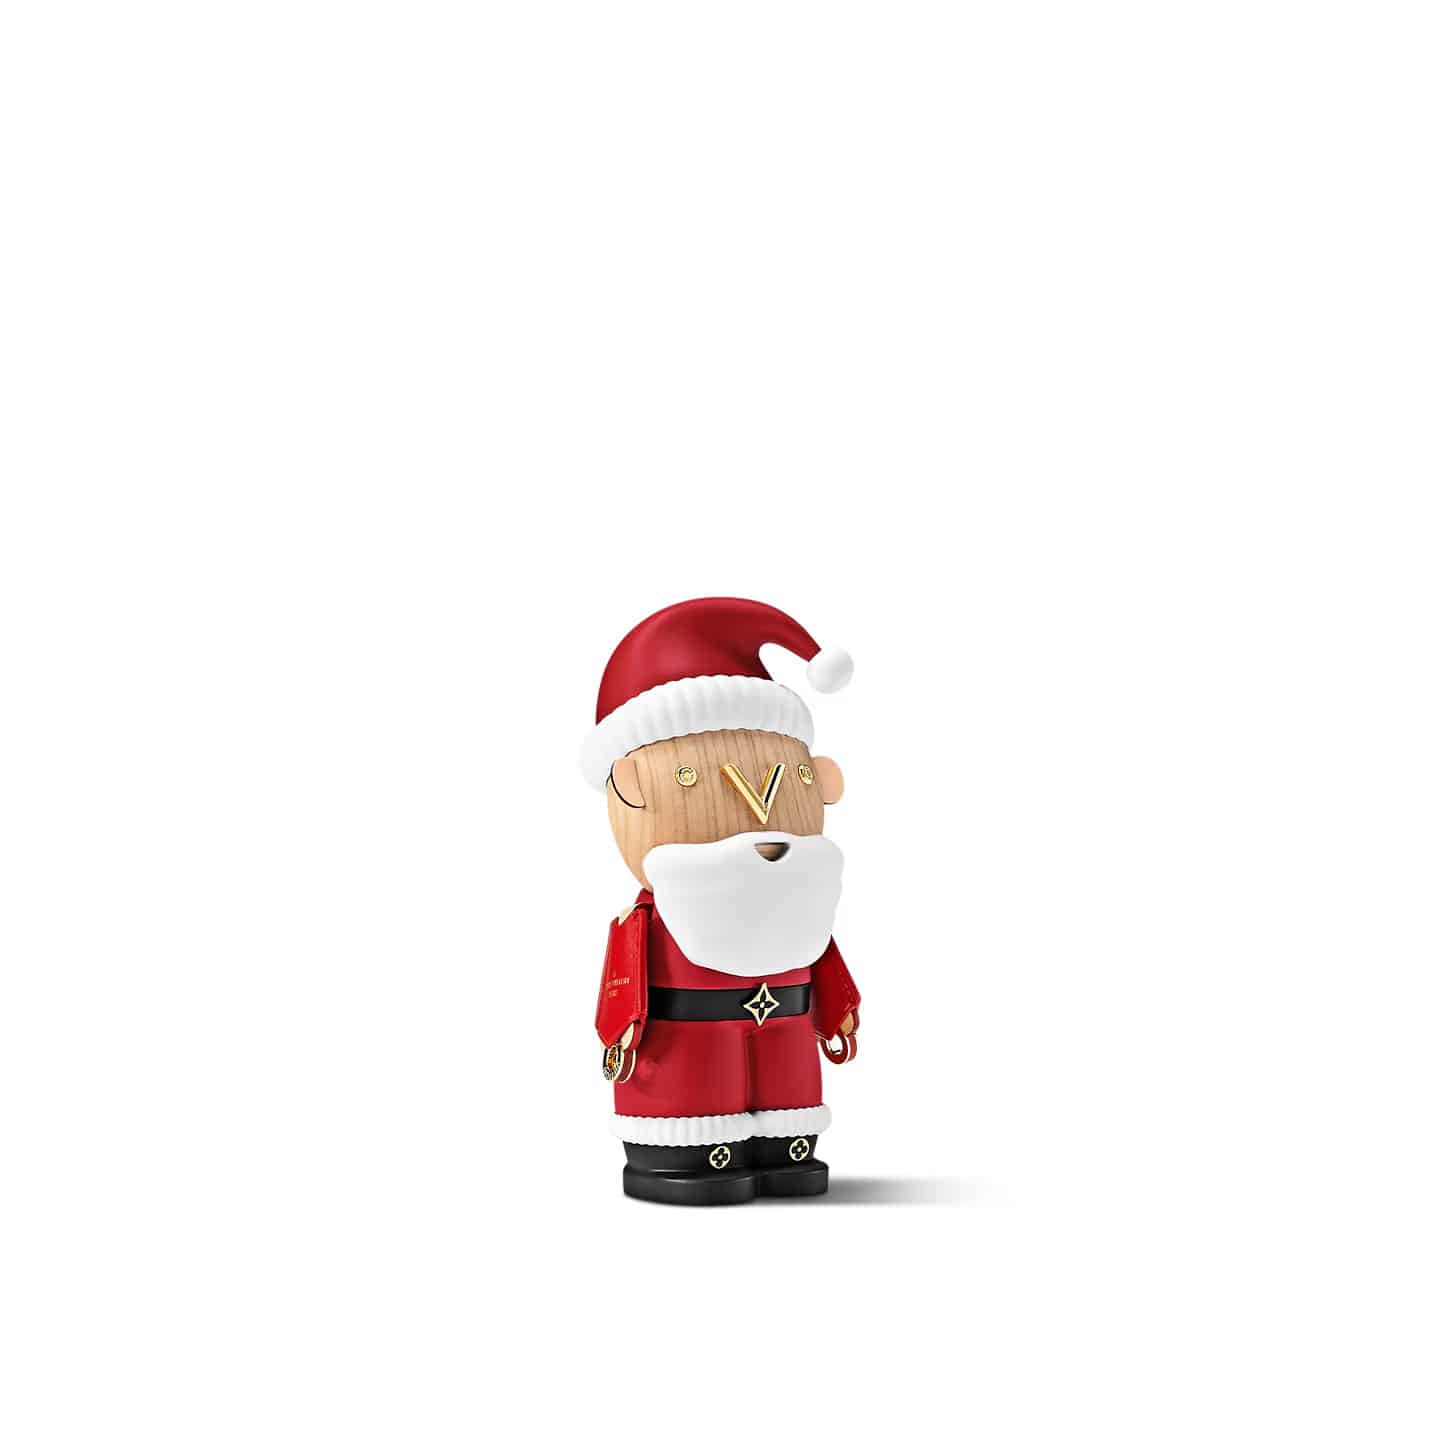 Panenka Santa Clause z vánoční kolekce Louis Vuitton.